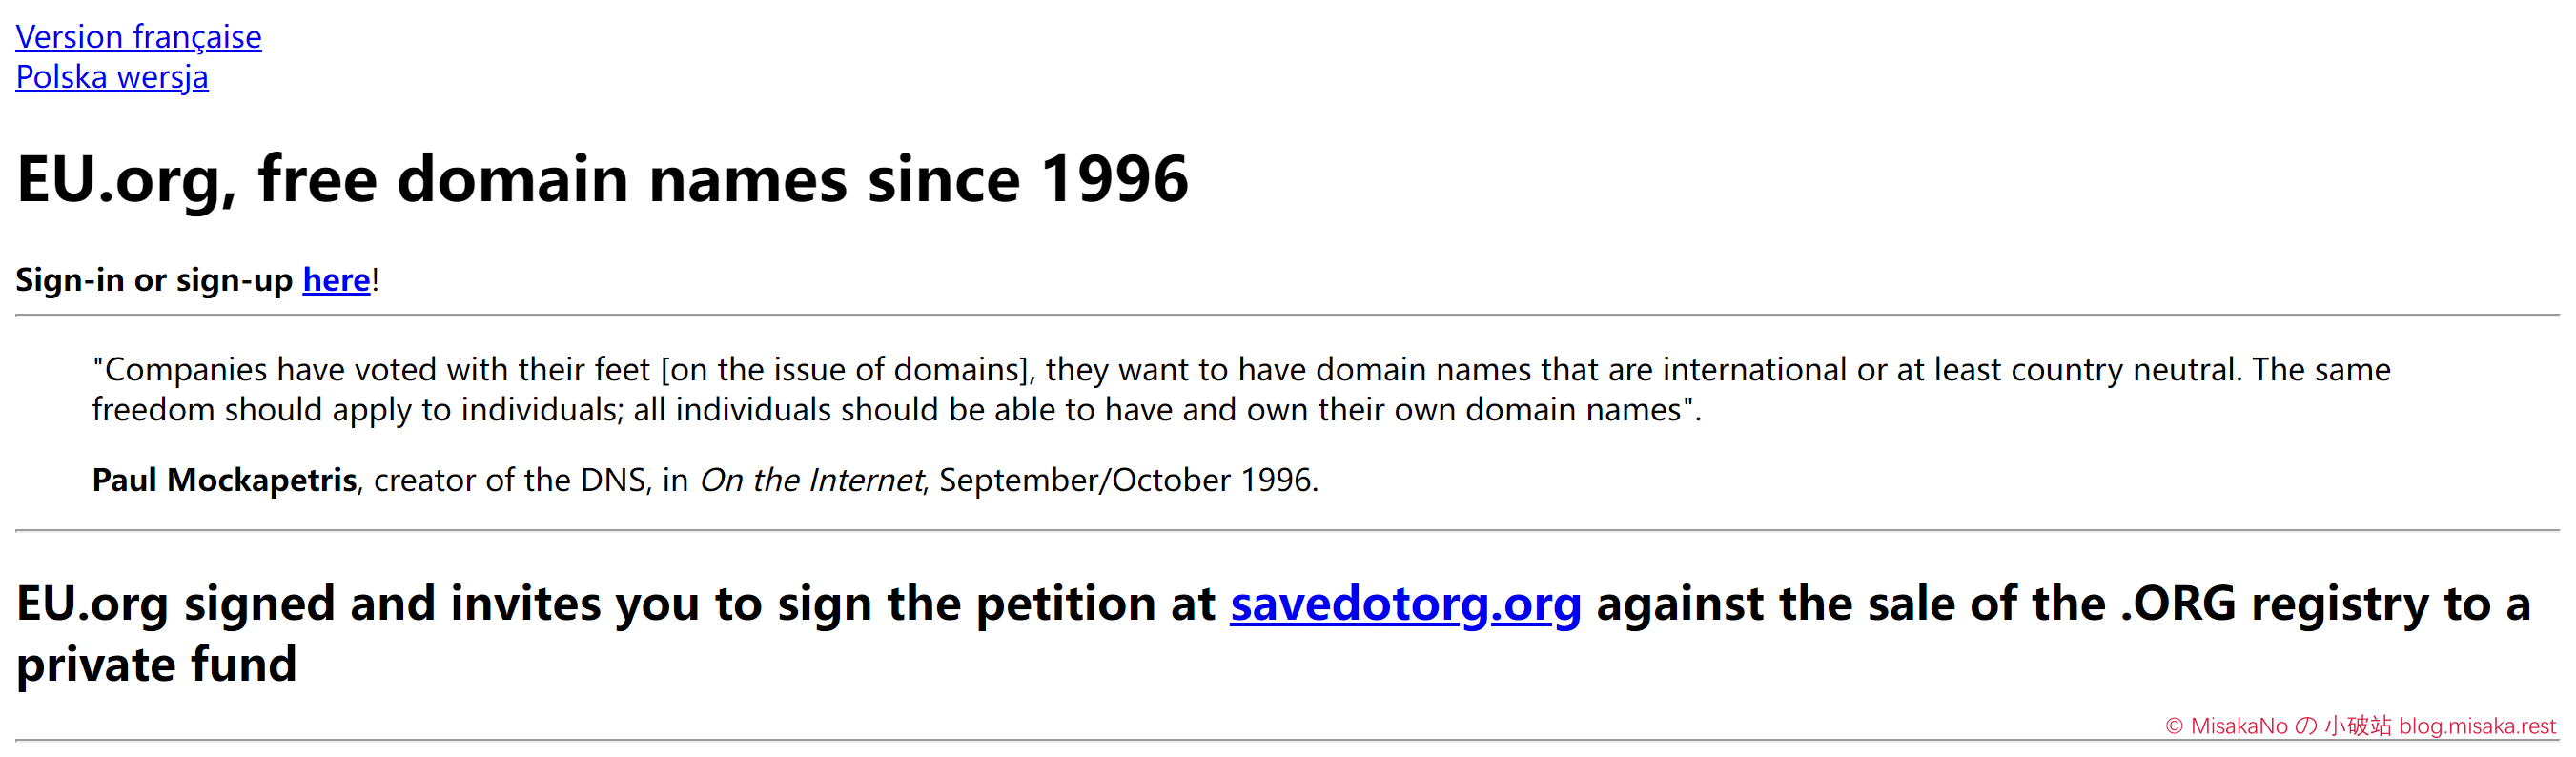 申请eu.org免费域名